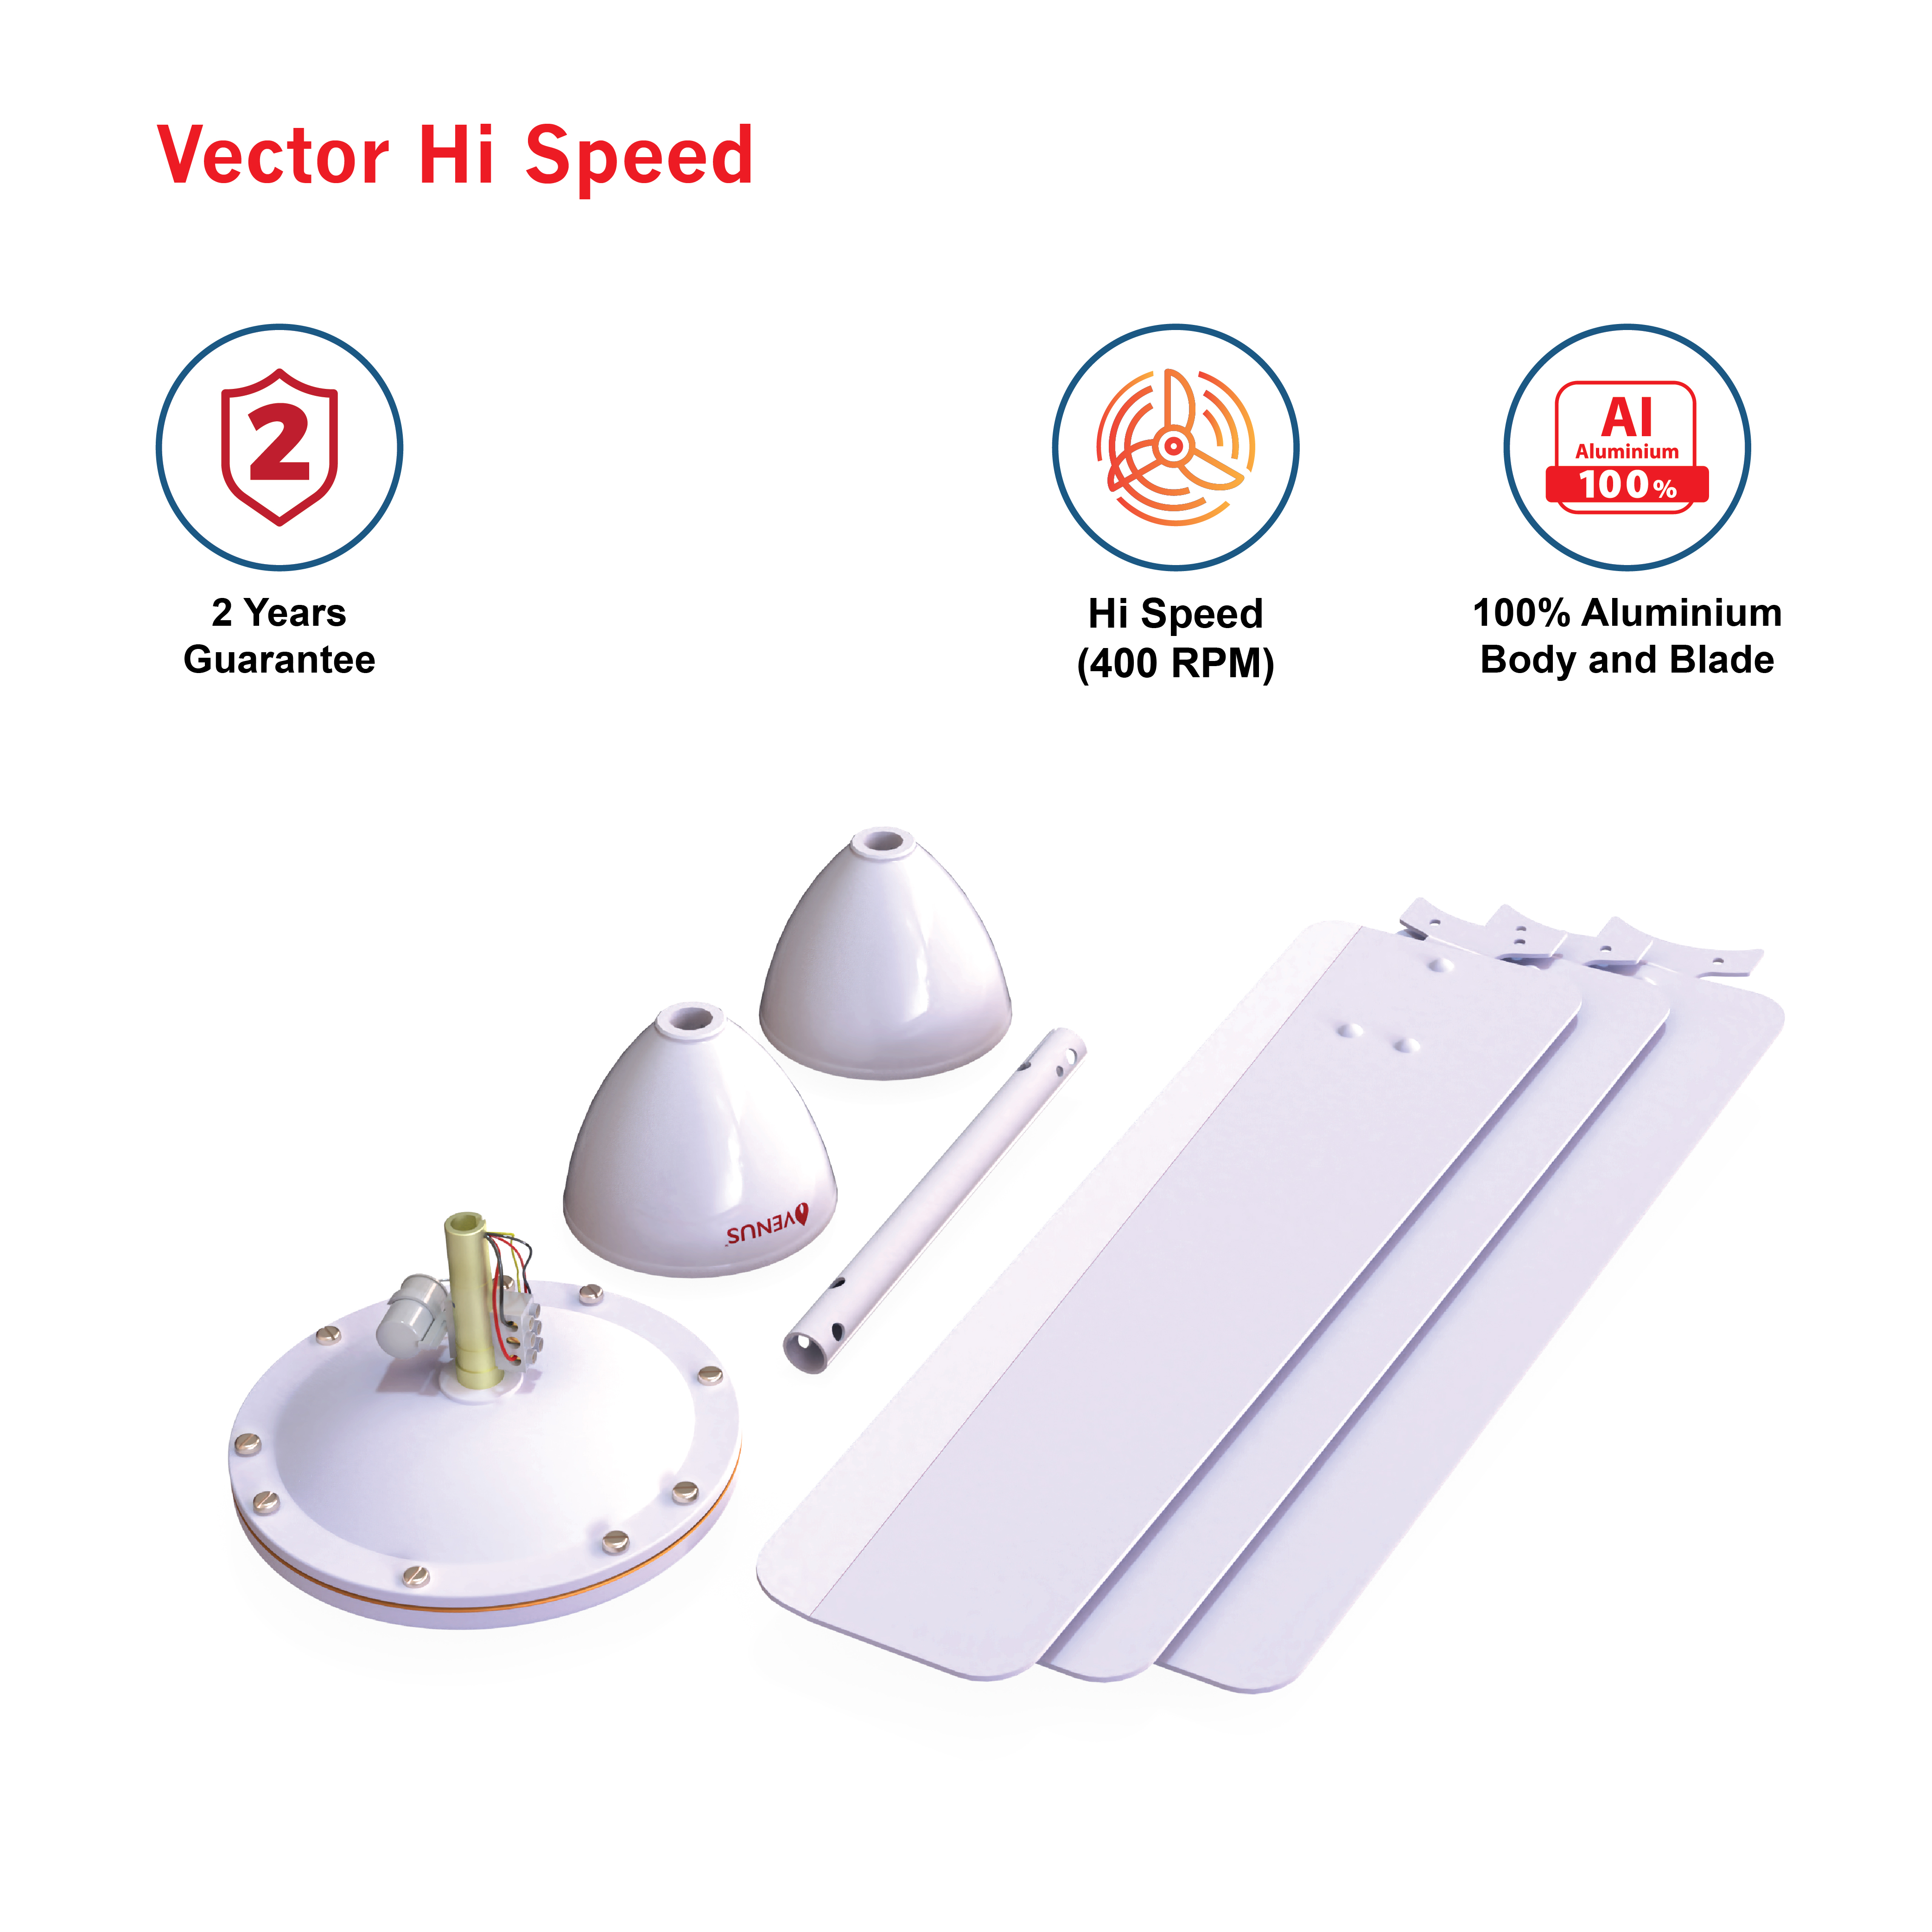 Vector-Hi-speed - V600mm